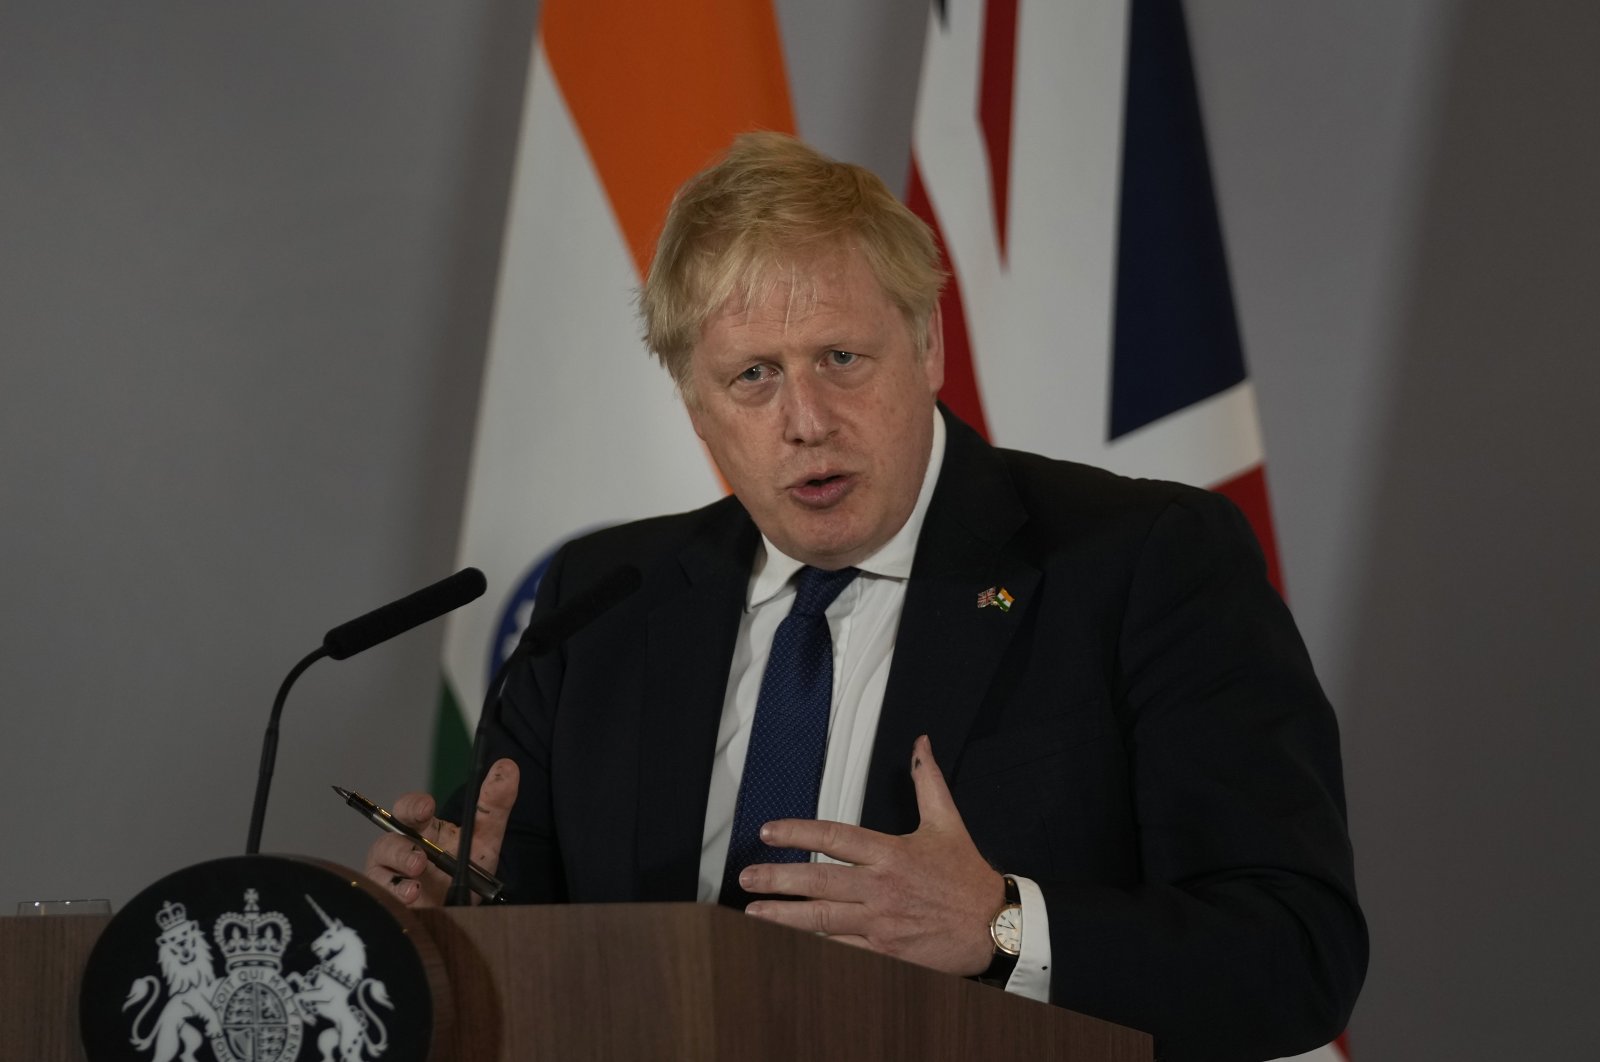 British Prime Minister Boris Johnson addresses a press conference in New Delhi, India, April 22, 2022. (AP Photo)